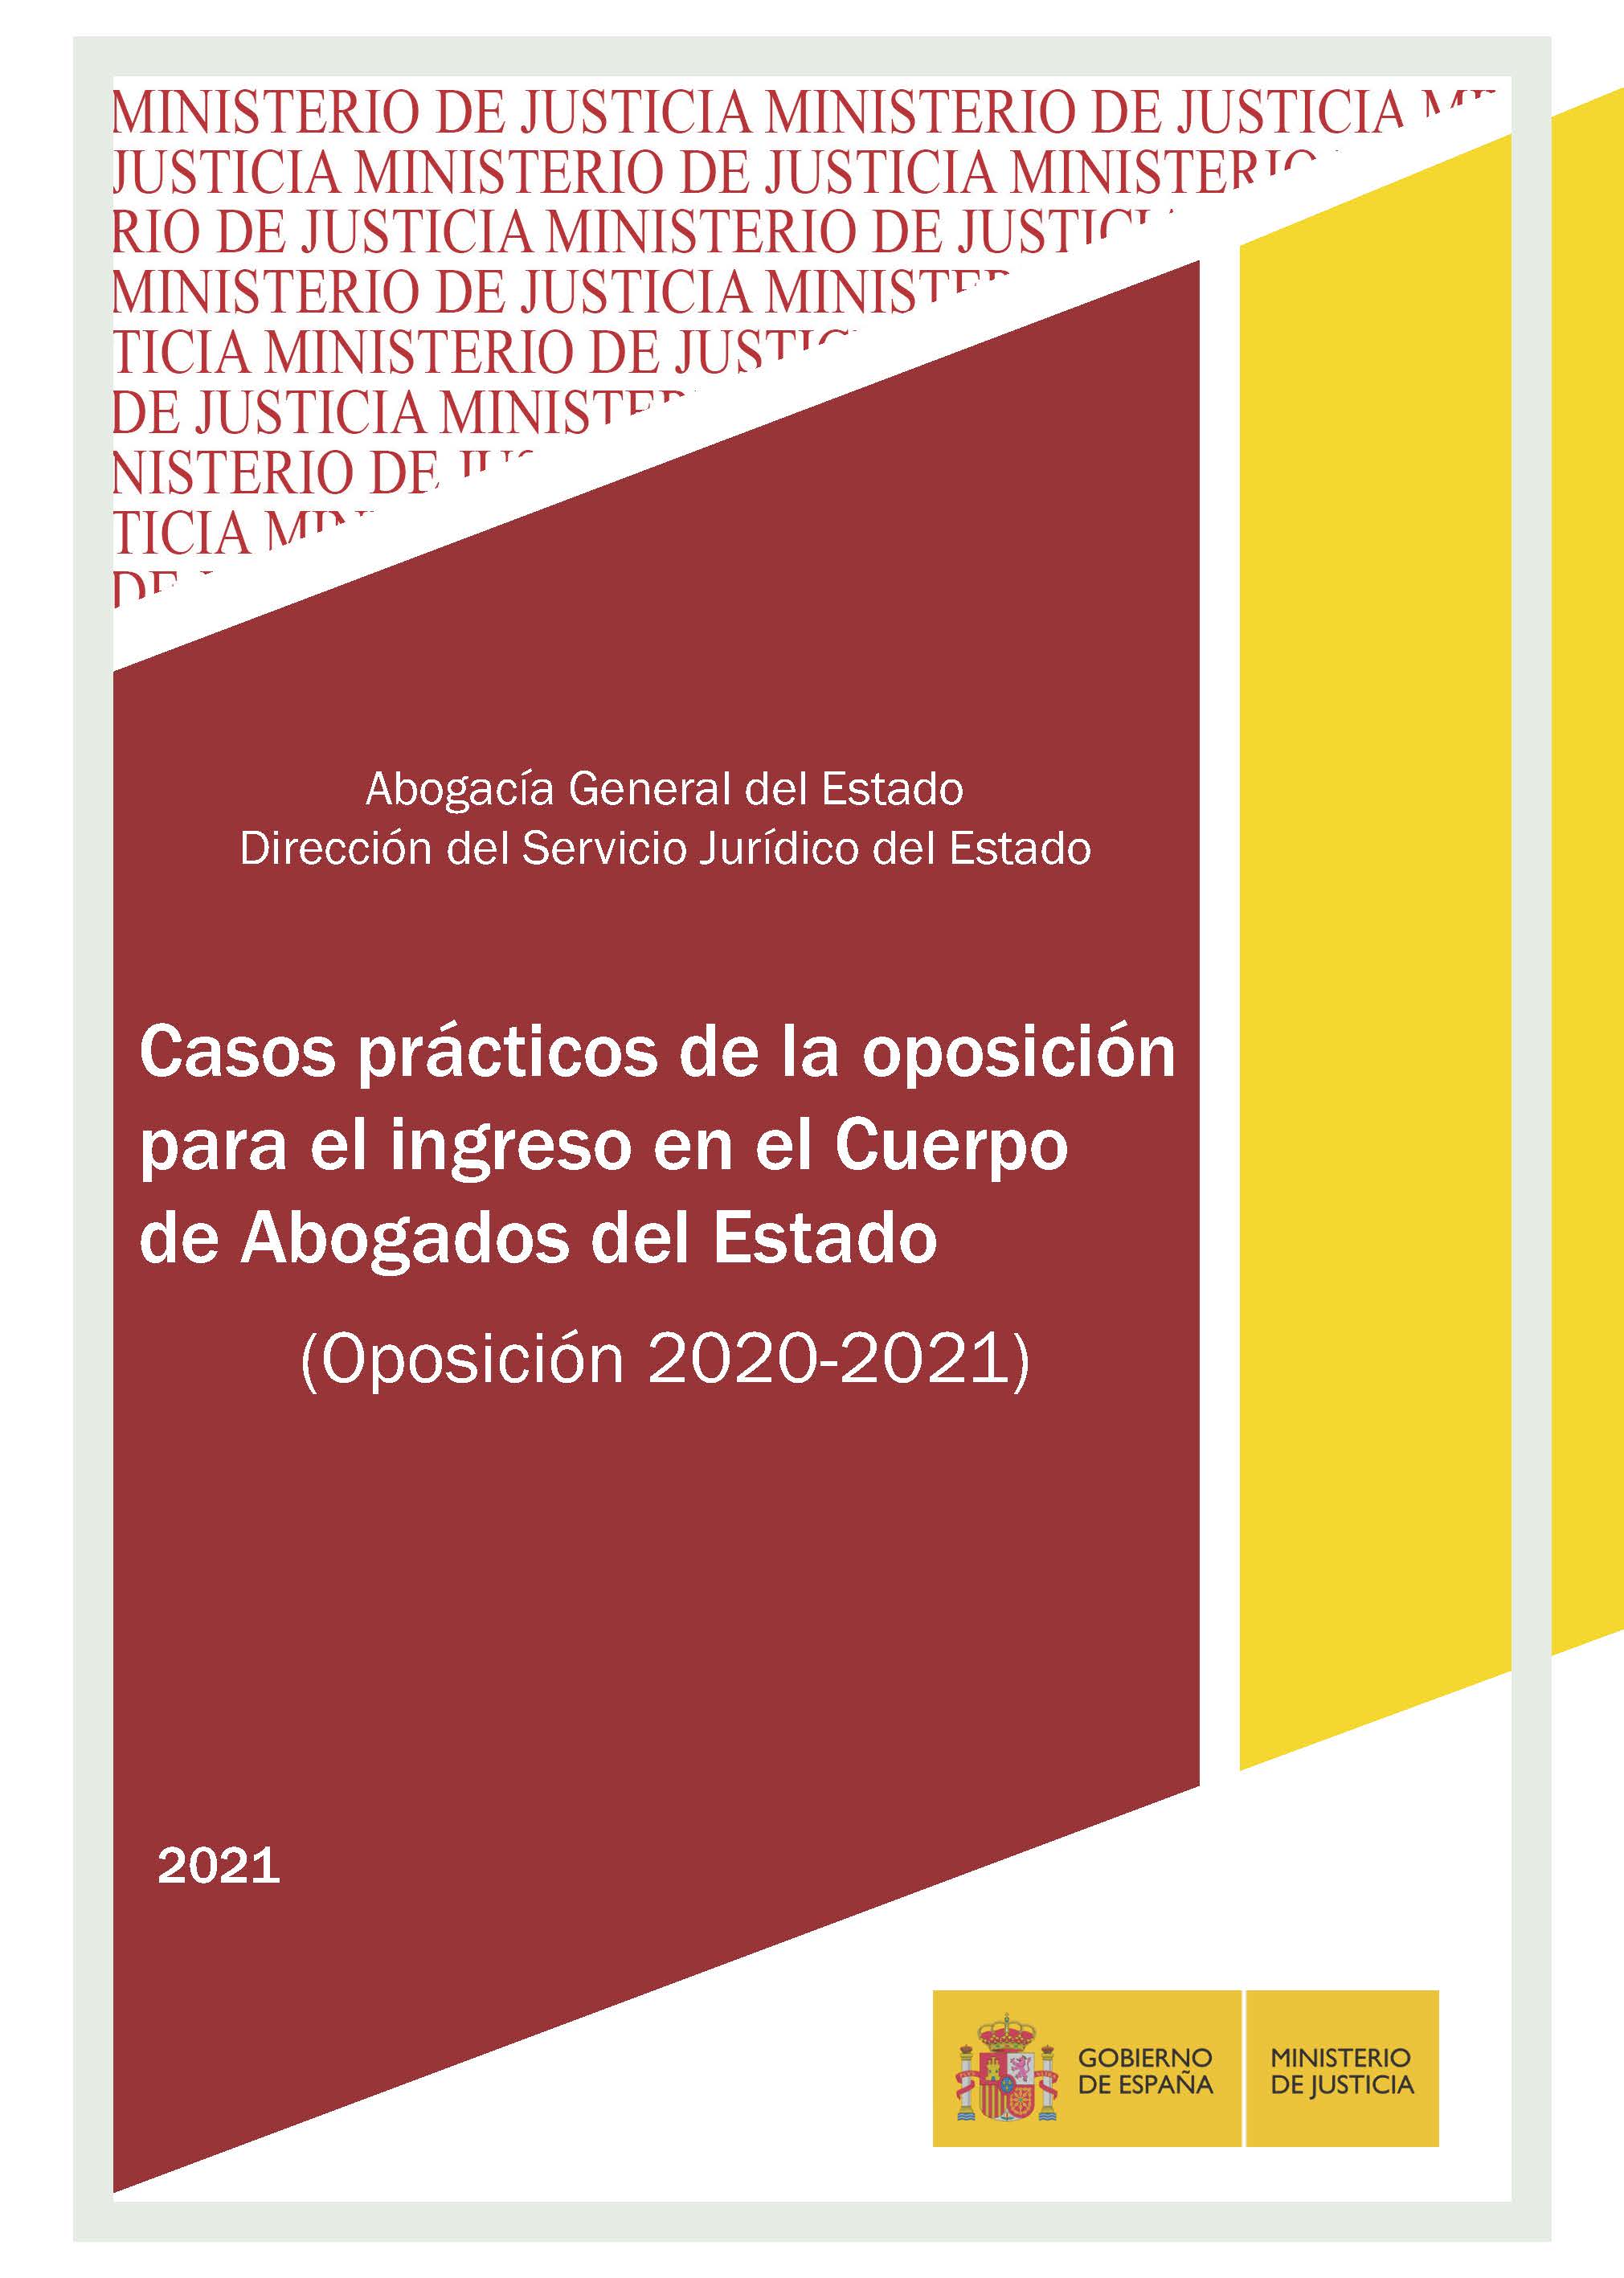 Ver detalles de CASOS PRÁCTICOS DE LA OPOSICIÓN PARA EL INGRESO EN EL CUERPO DE ABOGADOS DEL ESTADO 2020-2021 ,PDF